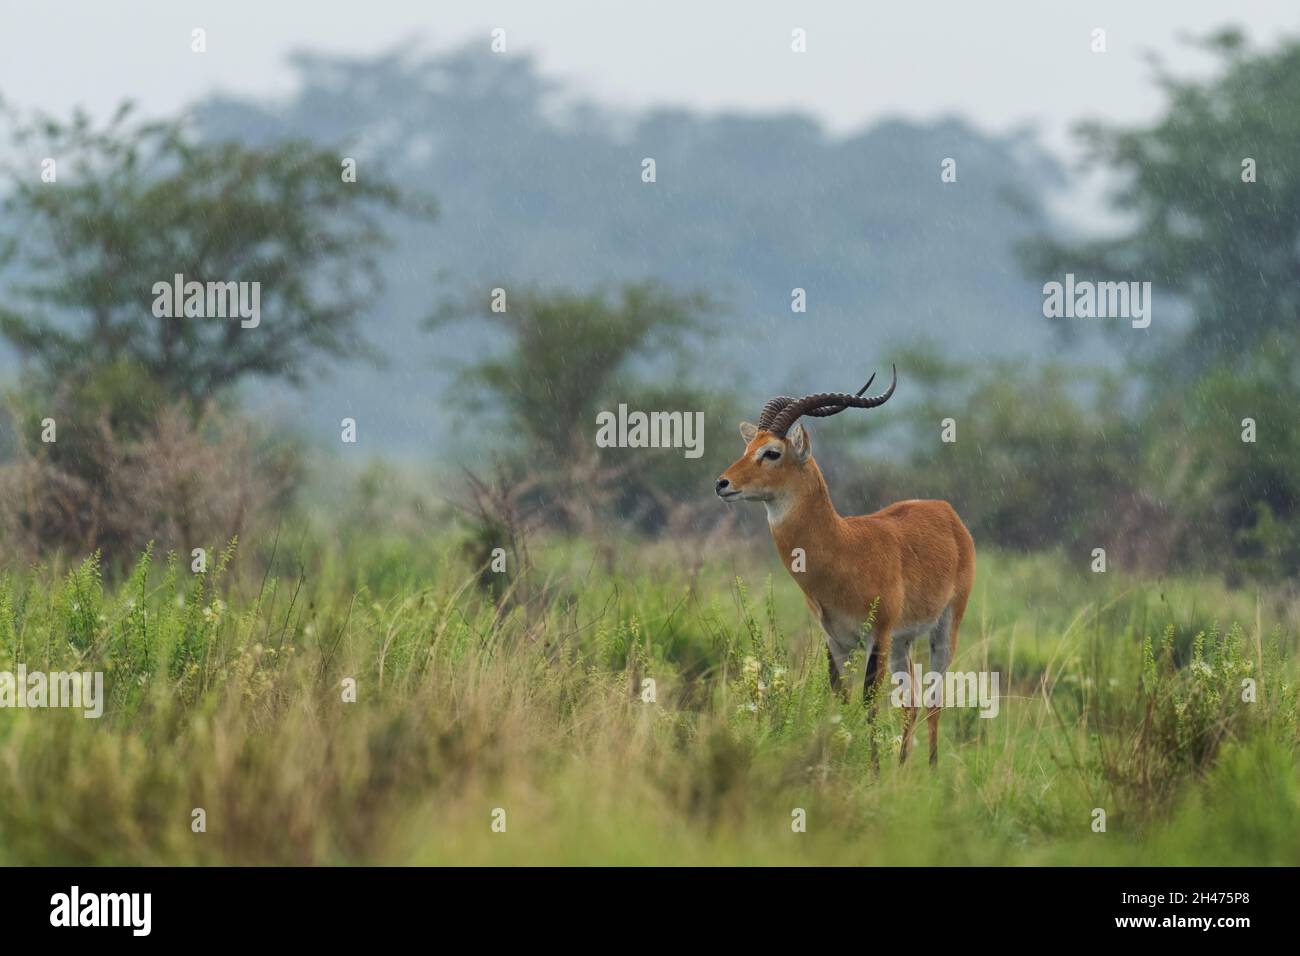 Uganda Kob - Kobus Kob thomasi, schöne kleine Antilope aus der afrikanischen Savanne, Queen Elizabeth National Park, Uganda. Stockfoto